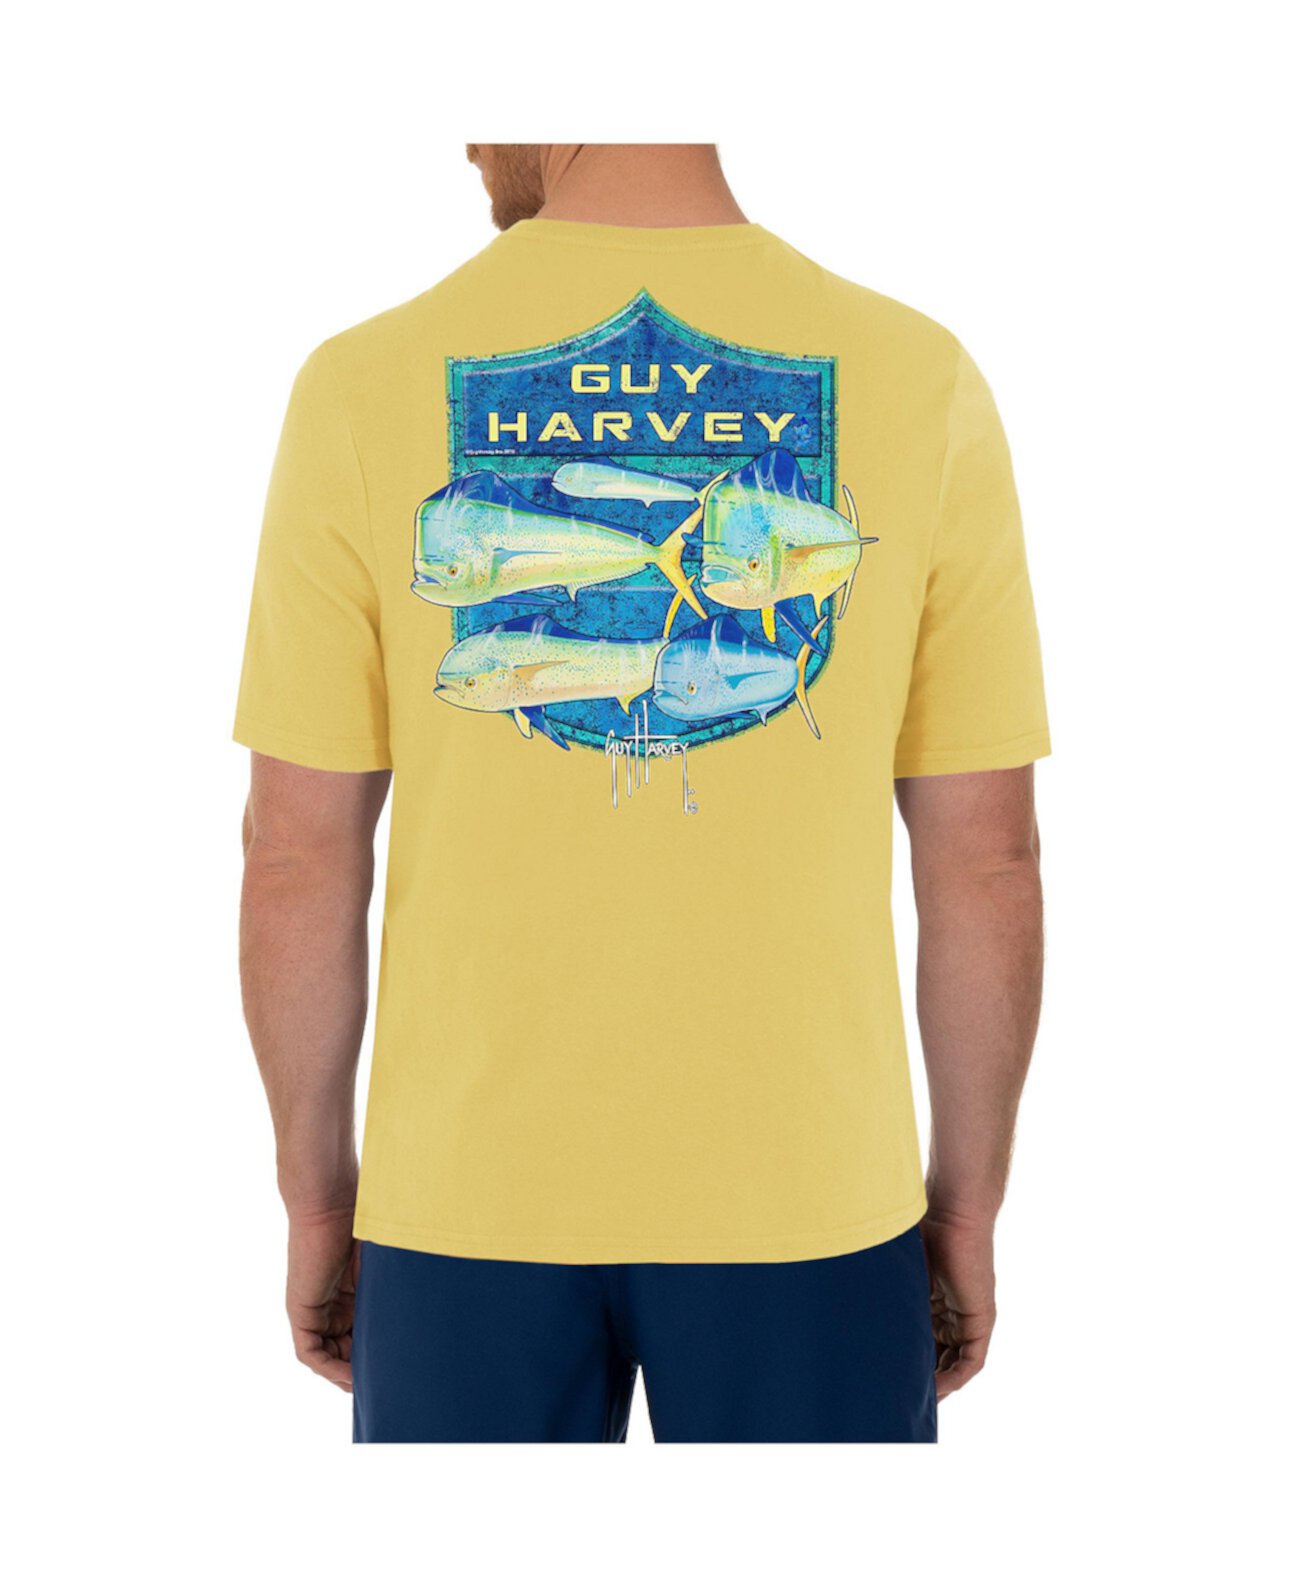 Мужская футболка с короткими рукавами и круглым вырезом Mahi Shield Guy Harvey